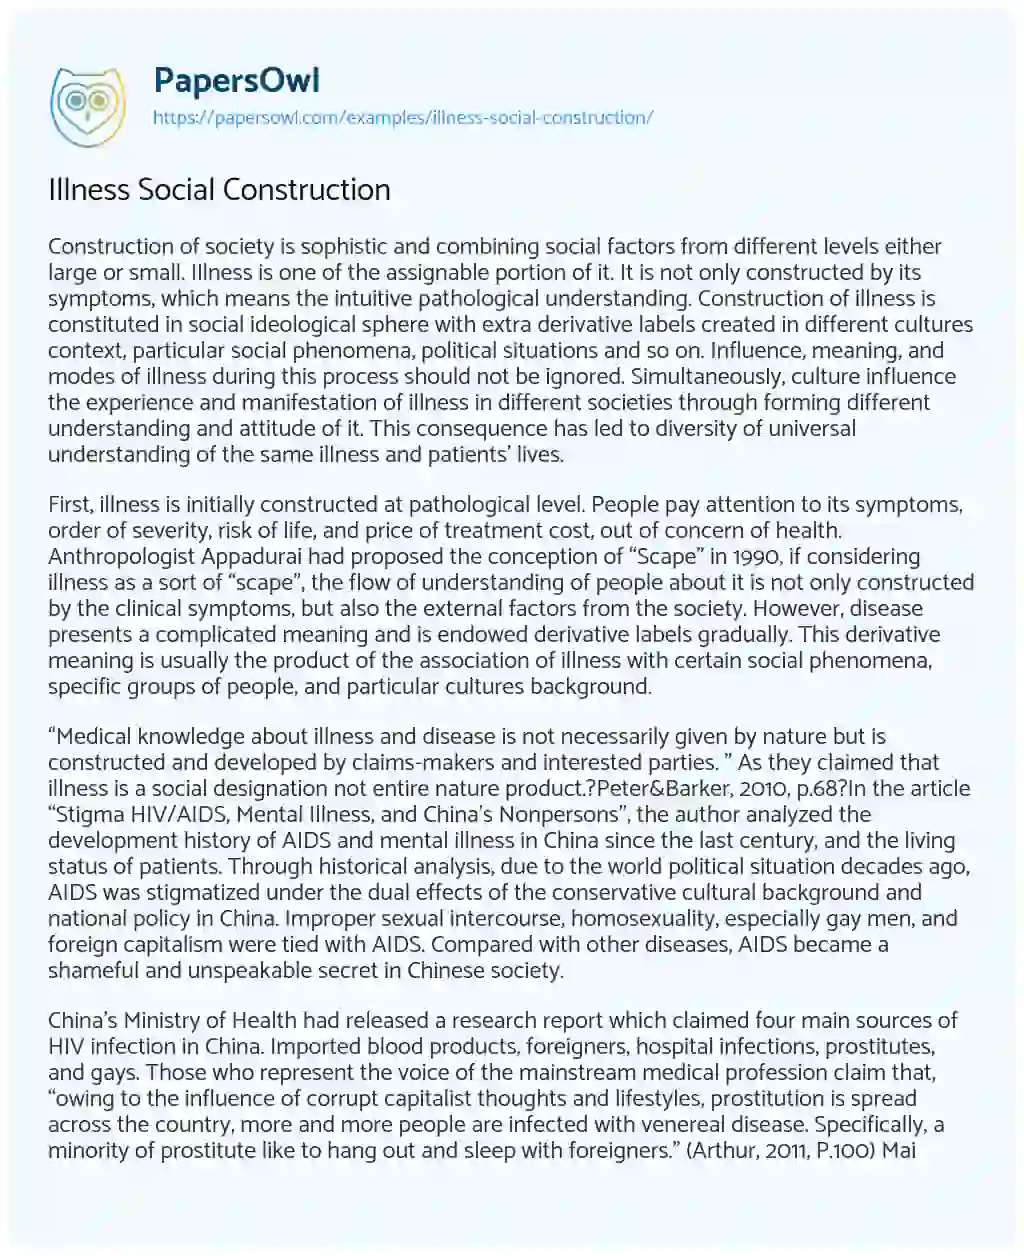 Essay on Illness Social Construction